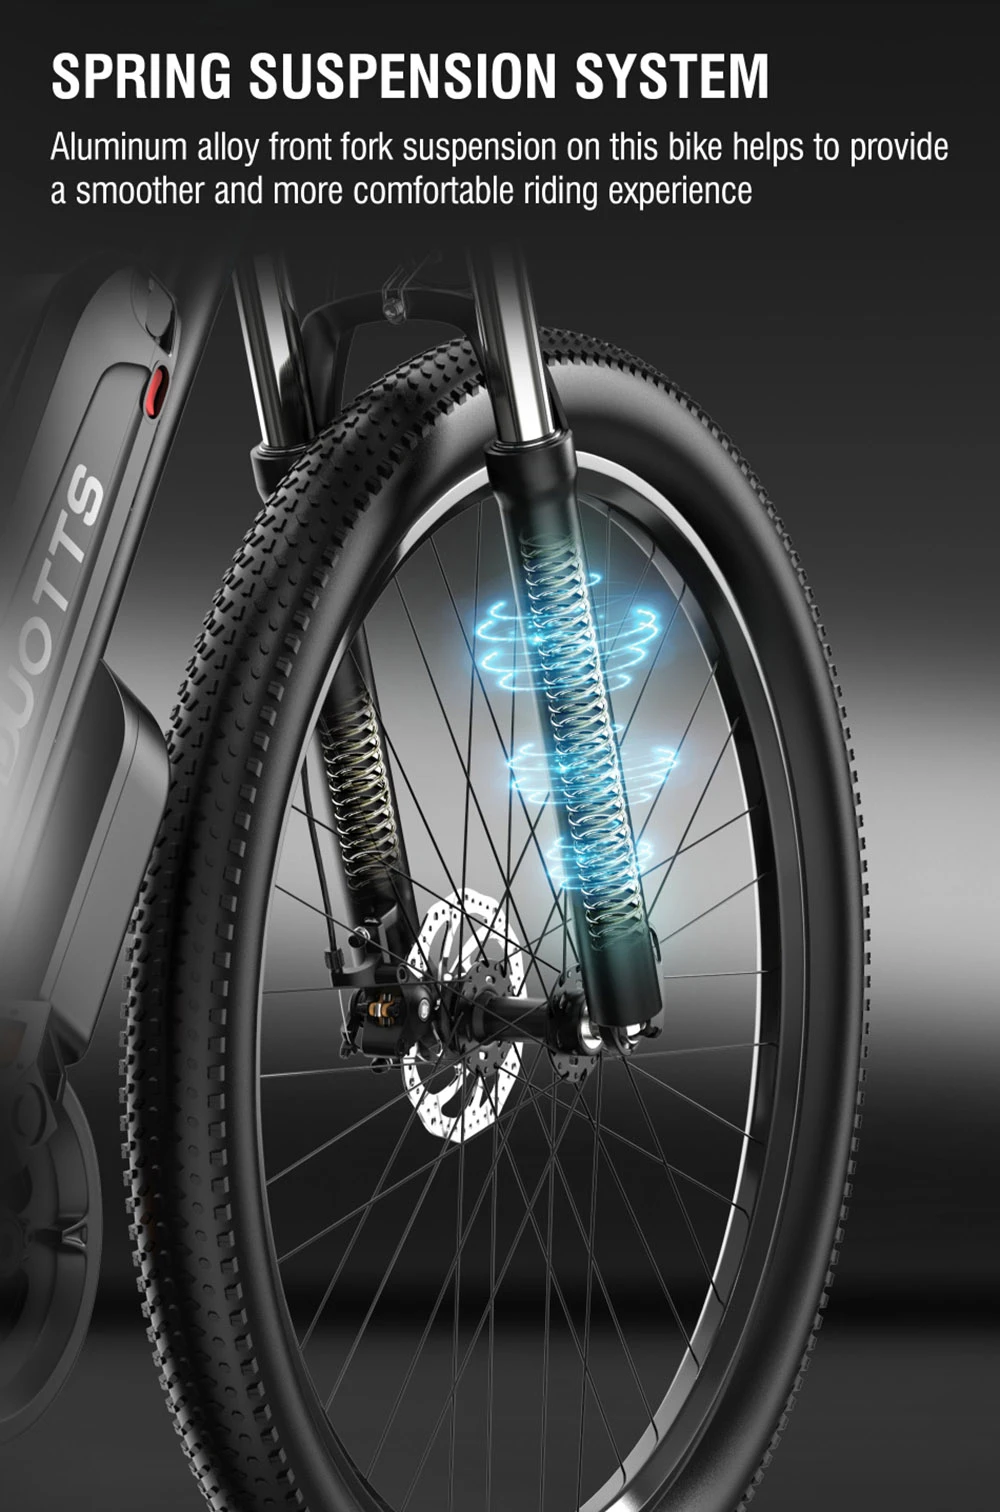 DUOTTS C29 bicicleta eléctrica 750W bicicleta de montaña 48V 15Ah batería para 50km rango 50 km/h velocidad máxima Shimano 21 engranaje de velocidad